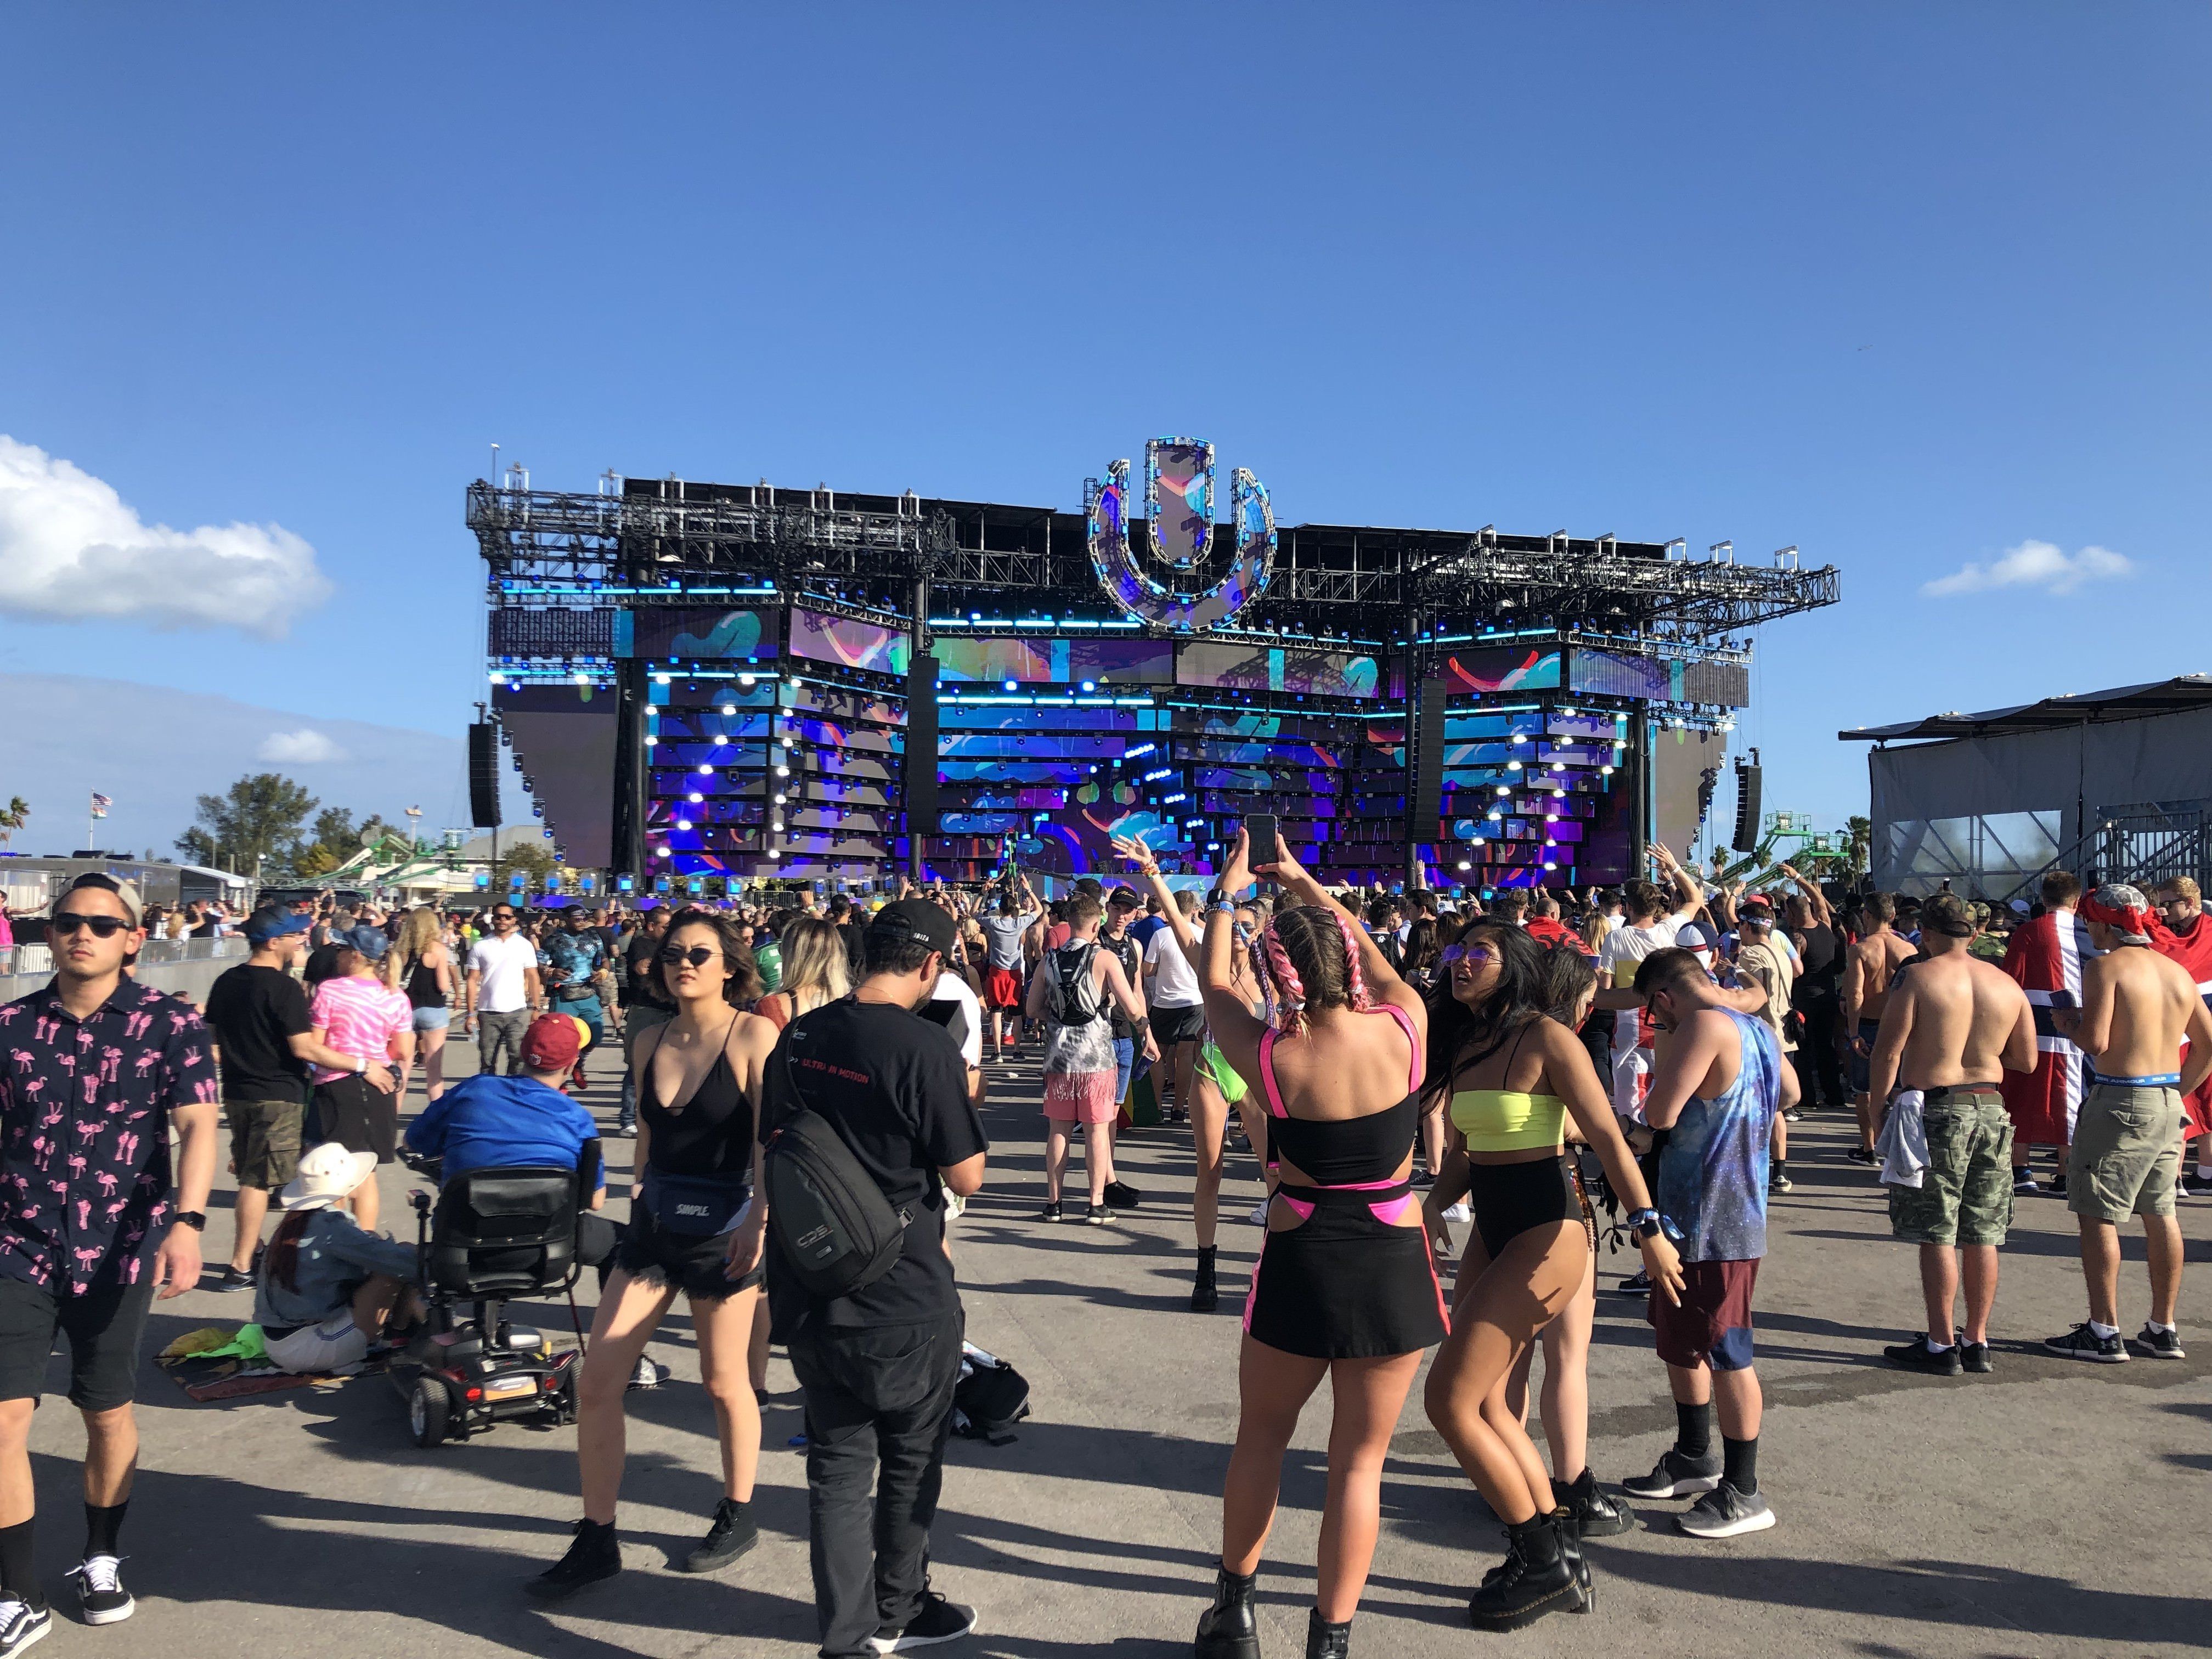 Personas asisten al arranque del Ultra Music Festival, considerado el festival de música electrónica más importante del mundo. EFE/Antoni Belchi/Archivo
